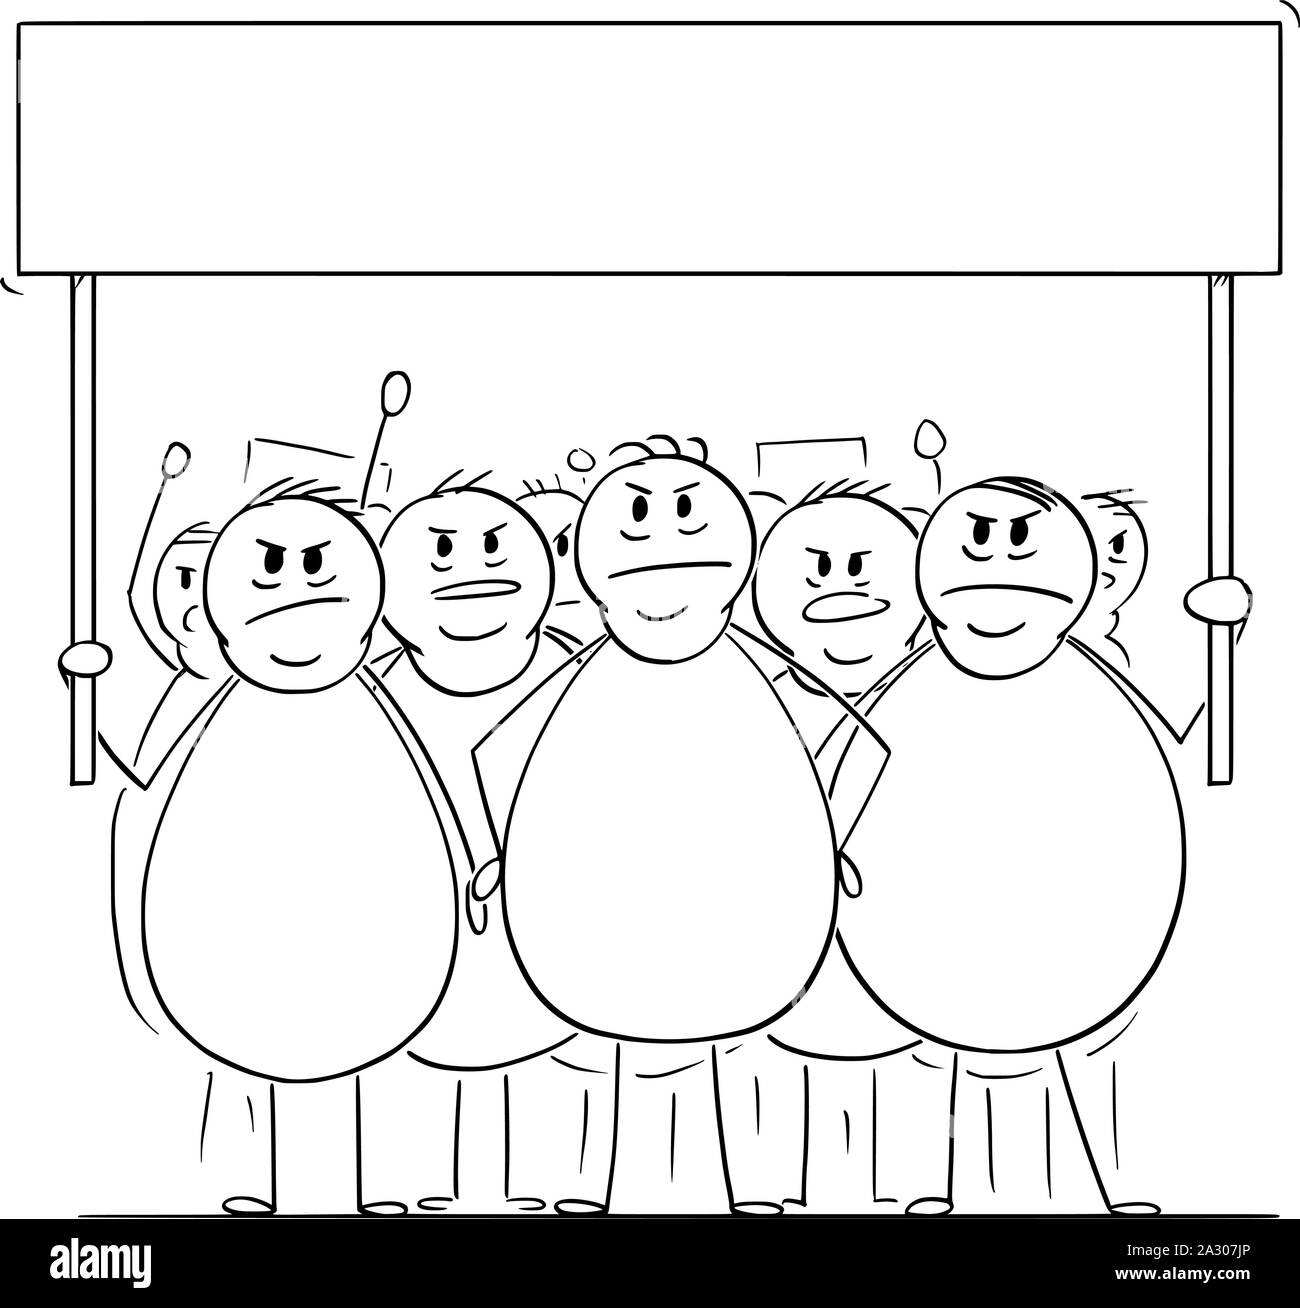 Vektor cartoon Strichmännchen Zeichnen konzeptionelle Darstellung der Gruppe von Aufgebrachten übergewichtig oder Fette Männer oder Menschen auf der Demonstration Demonstration mit leeren unterzeichnen. Konzept der Gesundheit, Konsum und Nachhaltigkeit. Stock Vektor